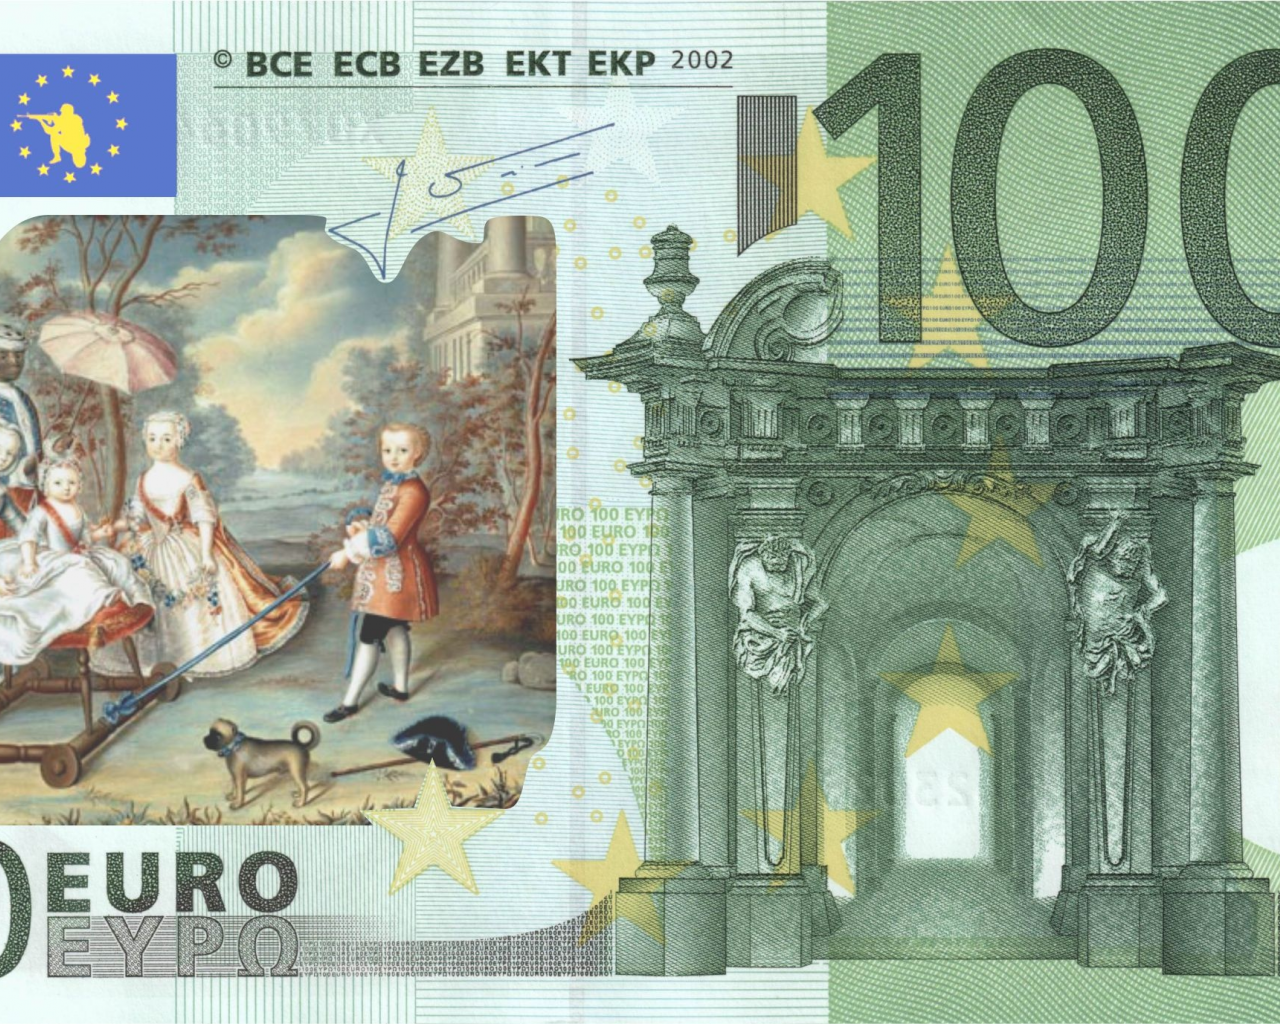 евро, деньги, европа, прикол, юмор, 100 евро, ес, германия, деньга, банкноты, банкнота, купюра, money, geld, карикатура, политика, финансы, банк, банки, власть, общество, граф, князь